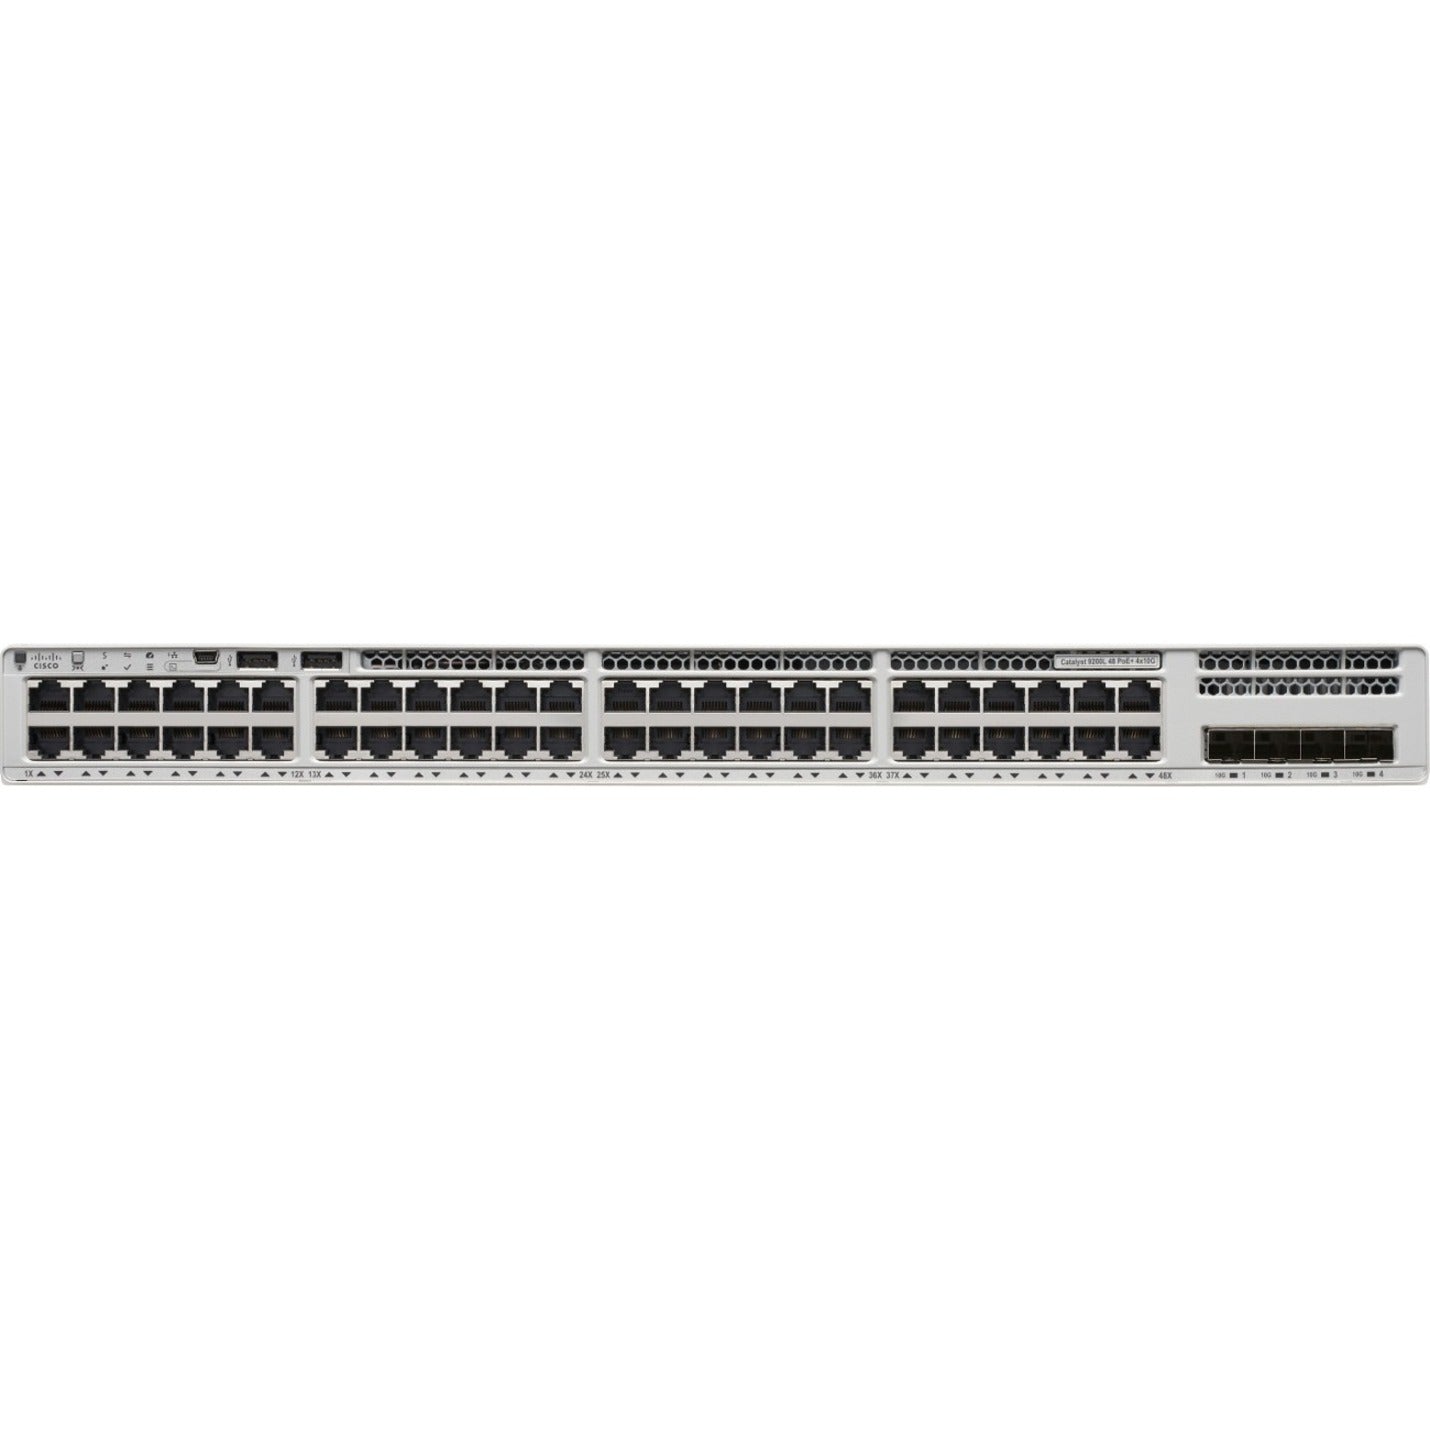 Cisco Catalyst 9200 C9200L-48P-4X Ethernet Switch